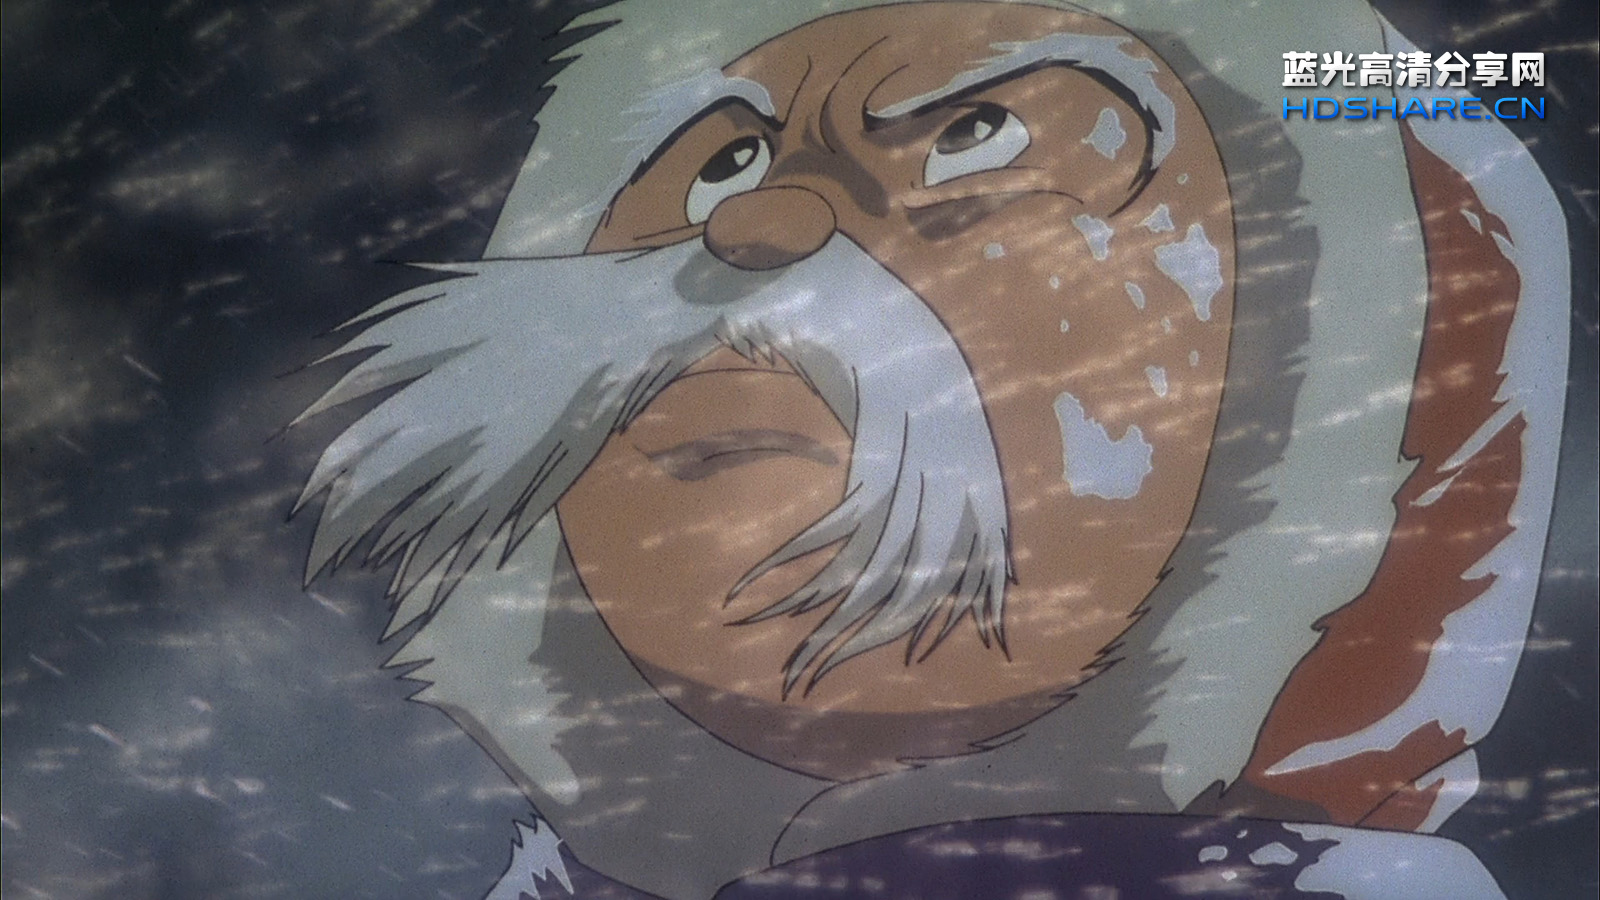 手冢治虫71年前的漫画《森林大帝》电影叙述感、童话式的情感羁绊 - 哔哩哔哩